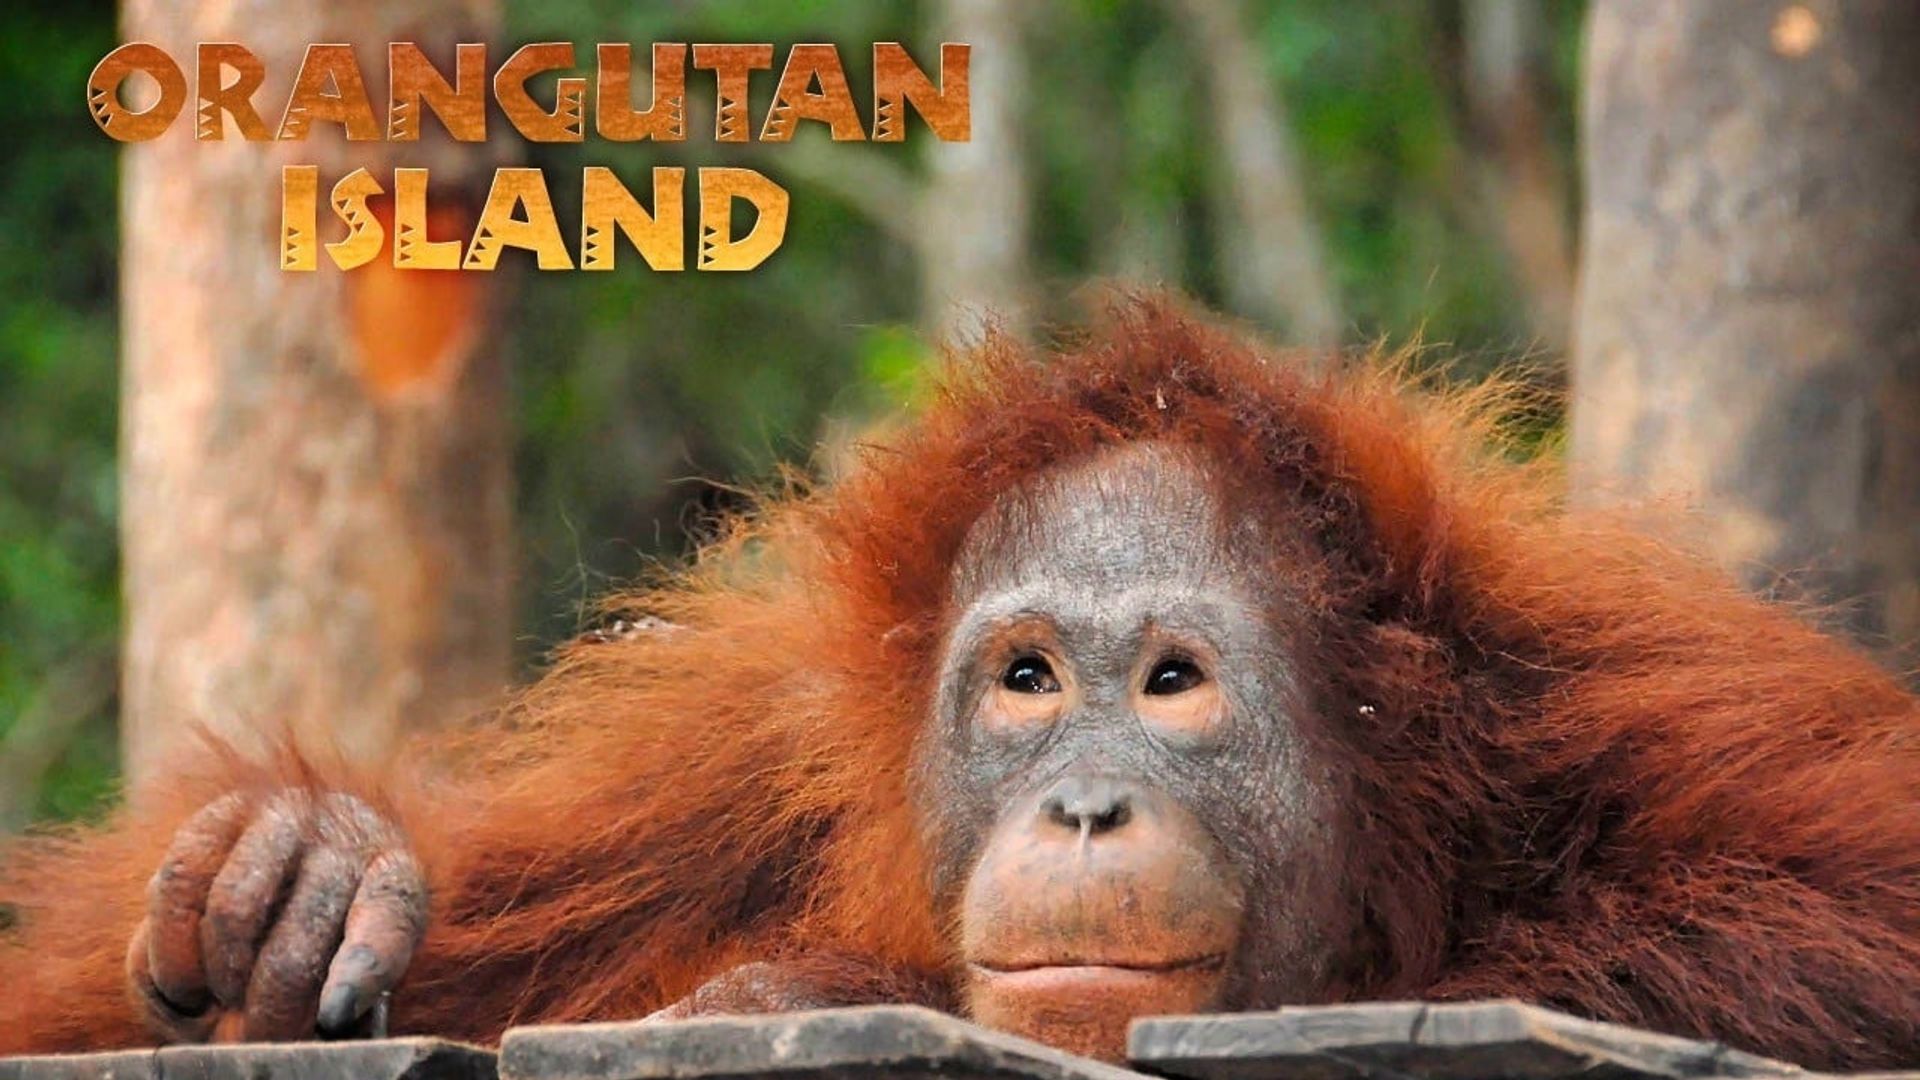 Orangutan Island background